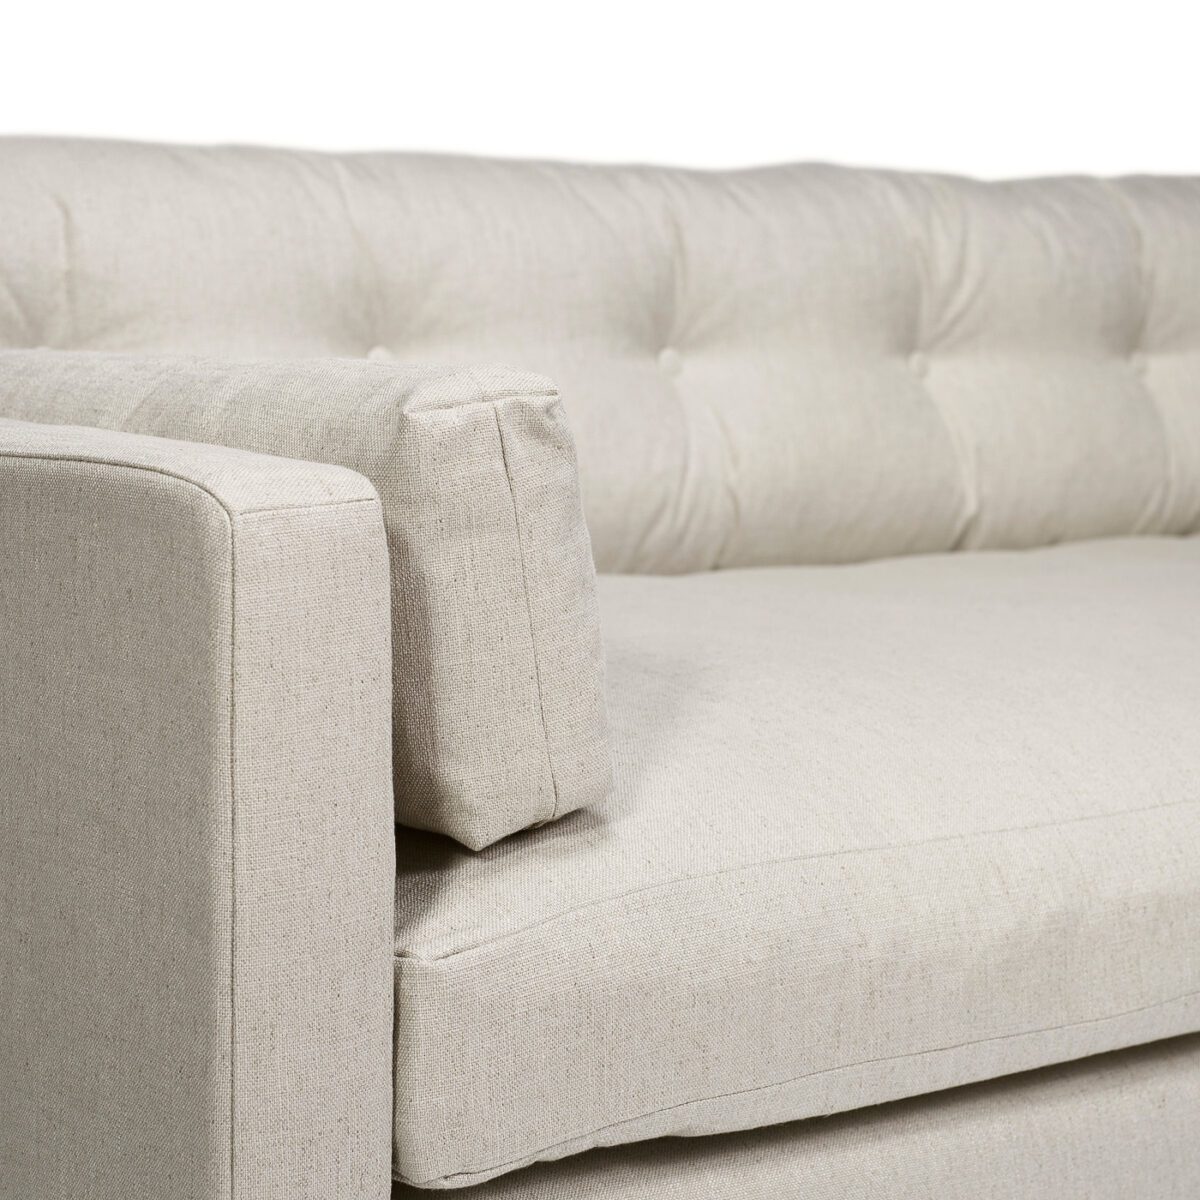 Dahlia Original 3-Seat Sofa True White